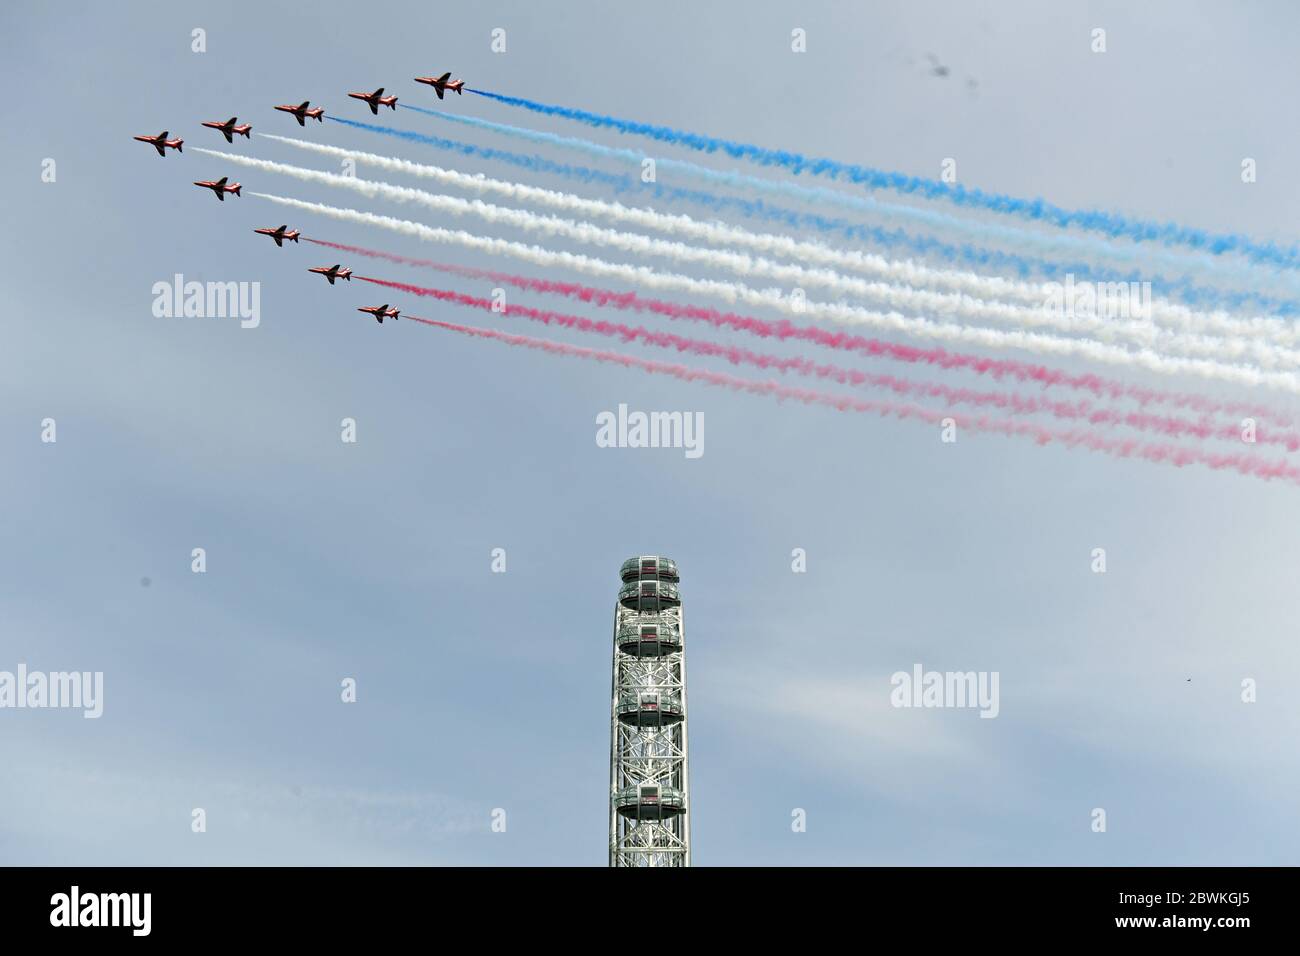 Die roten Pfeile der Royal Air Force passieren das London Eye während eines Flugs im Zentrum Londons, um den 75. Jahrestag des VE Day zu begehen. Stockfoto